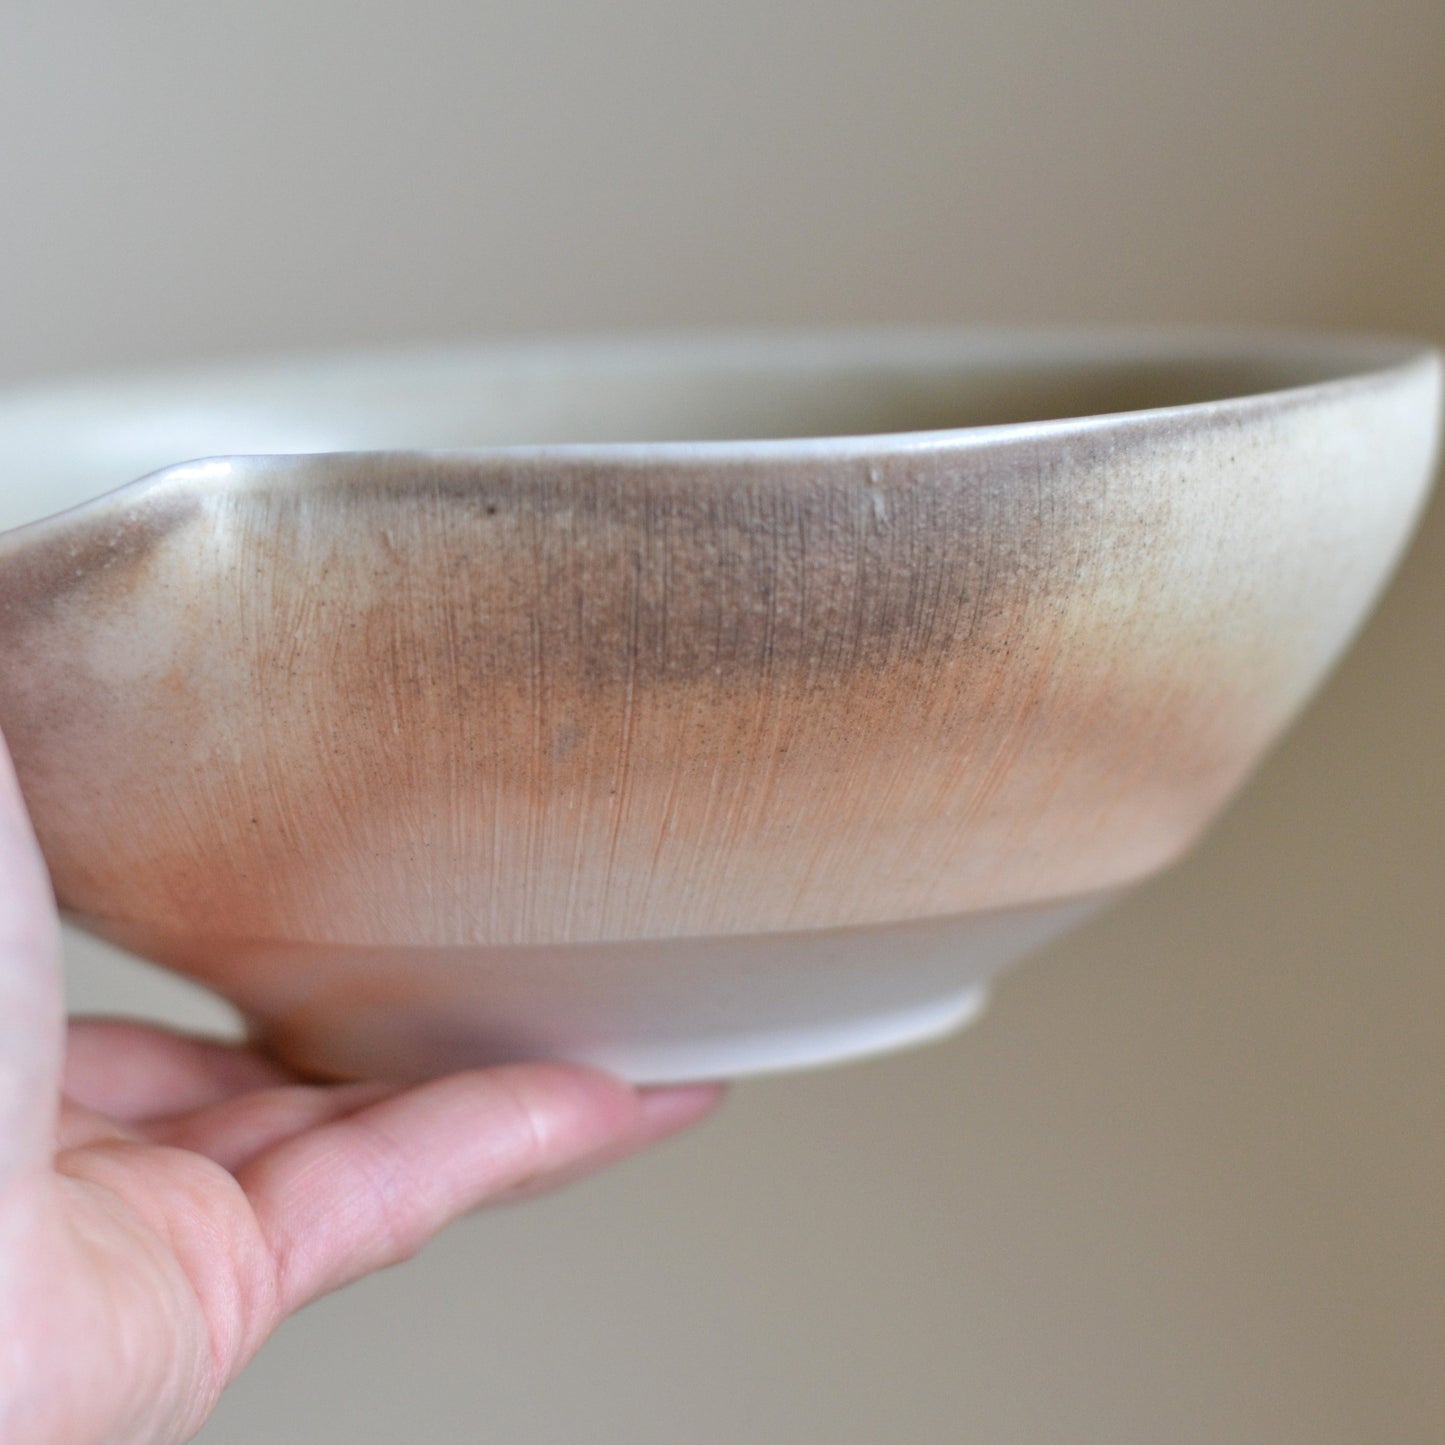 Pottery Bowl with Pour Spout